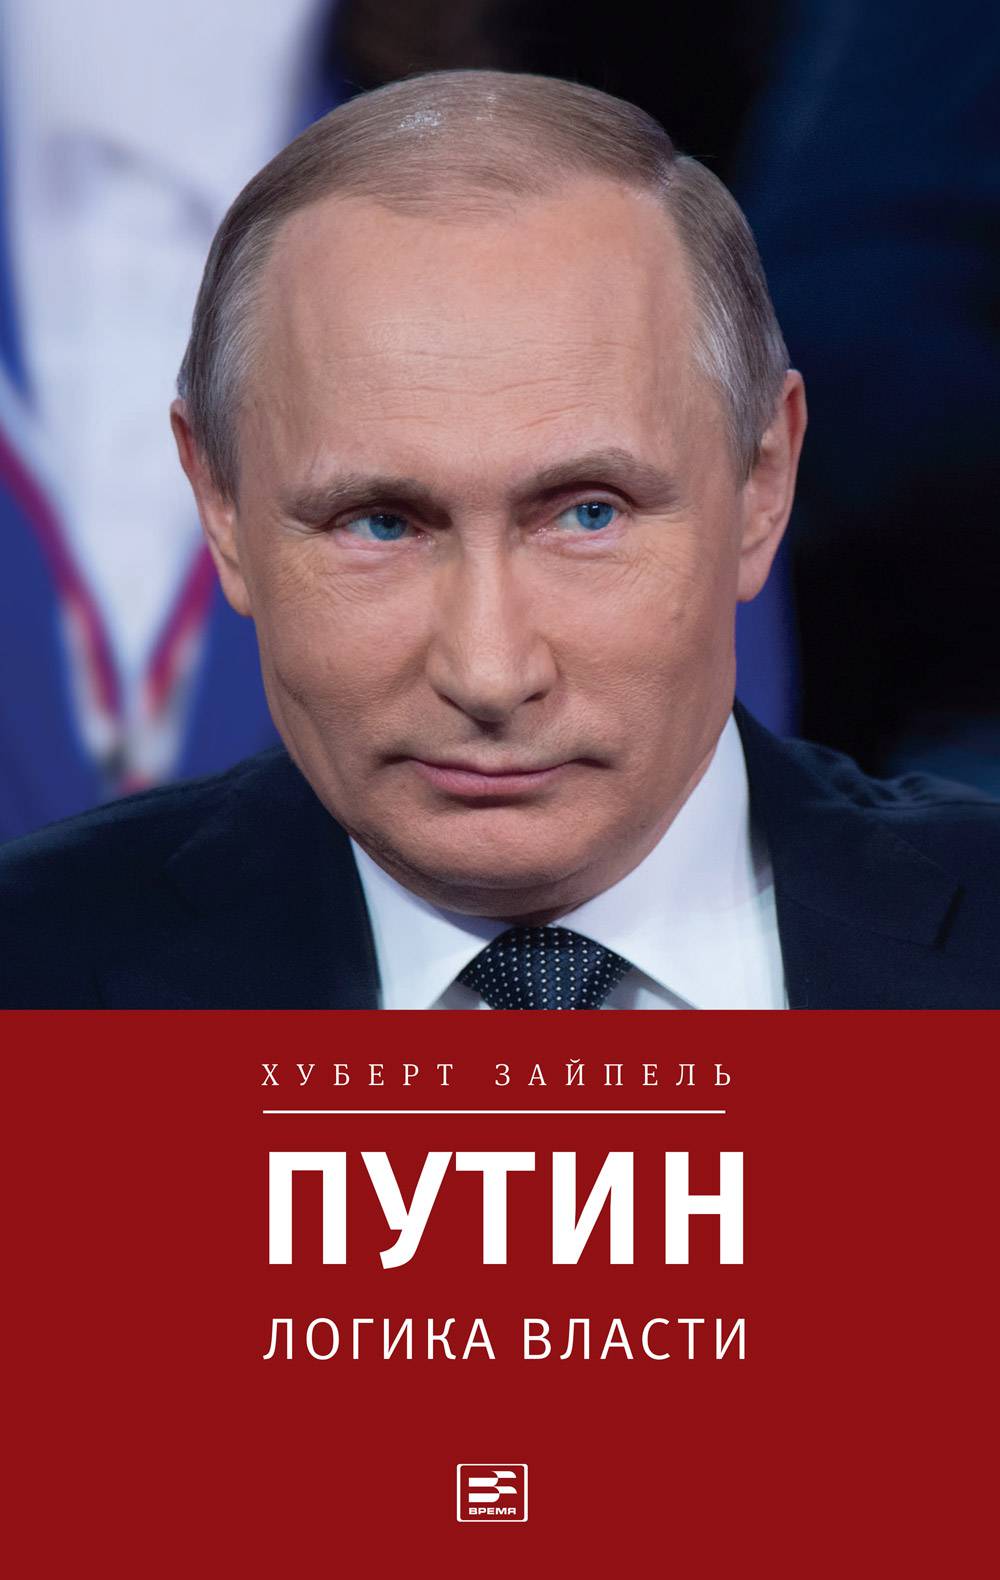 Putin-Innenansichten-der-acht